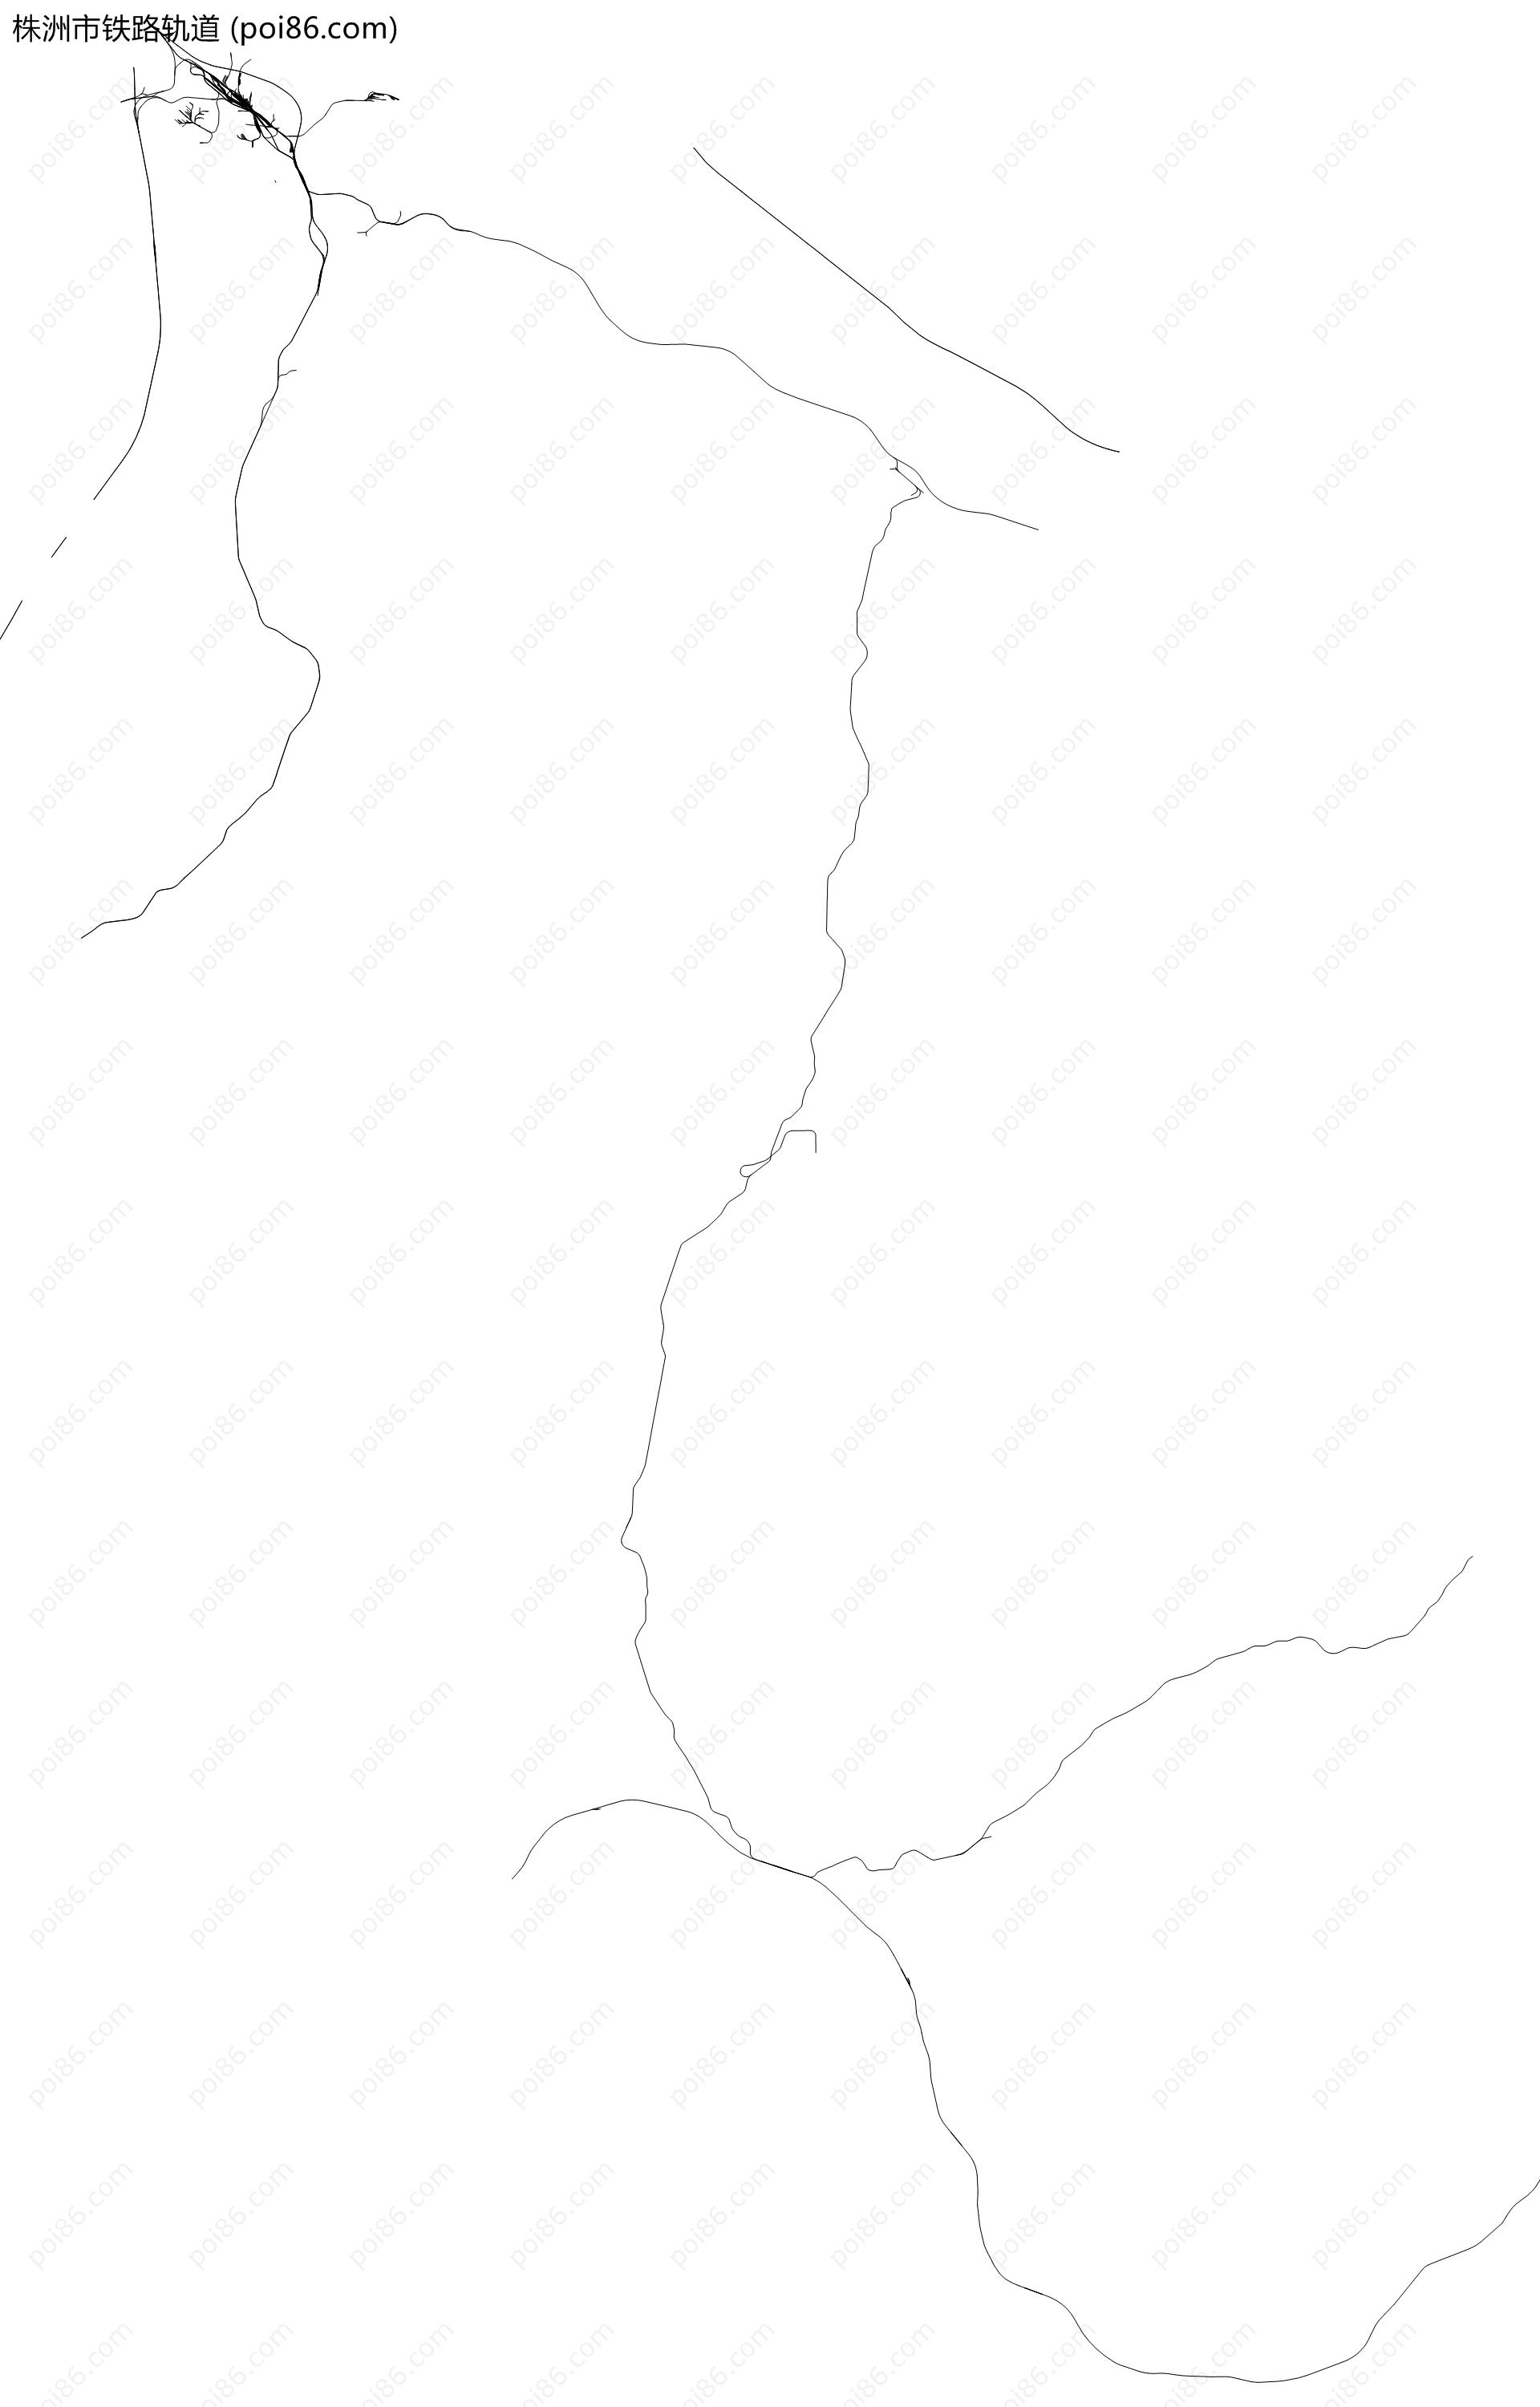 株洲市铁路轨道地图